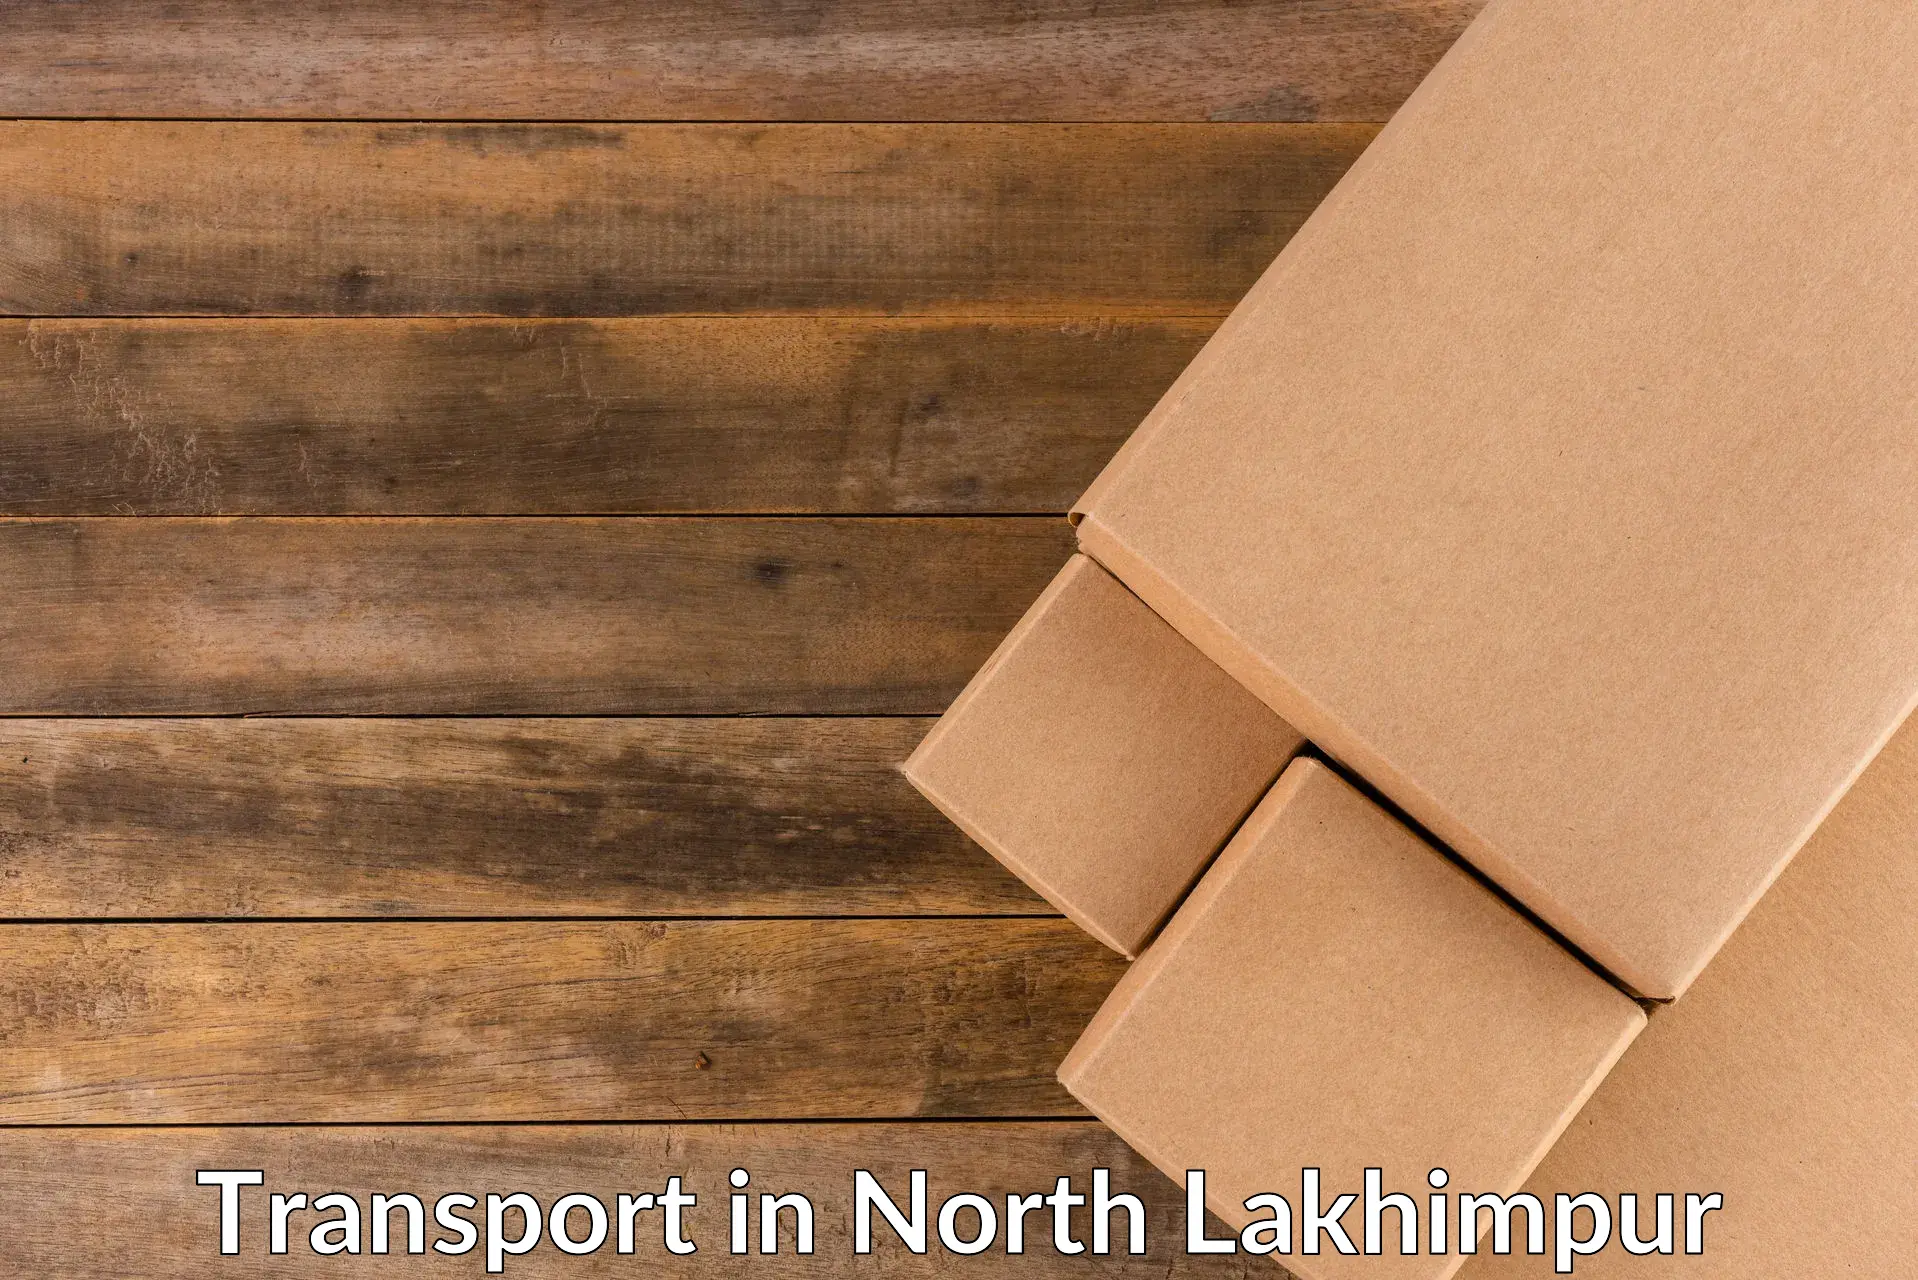 Online transport in North Lakhimpur